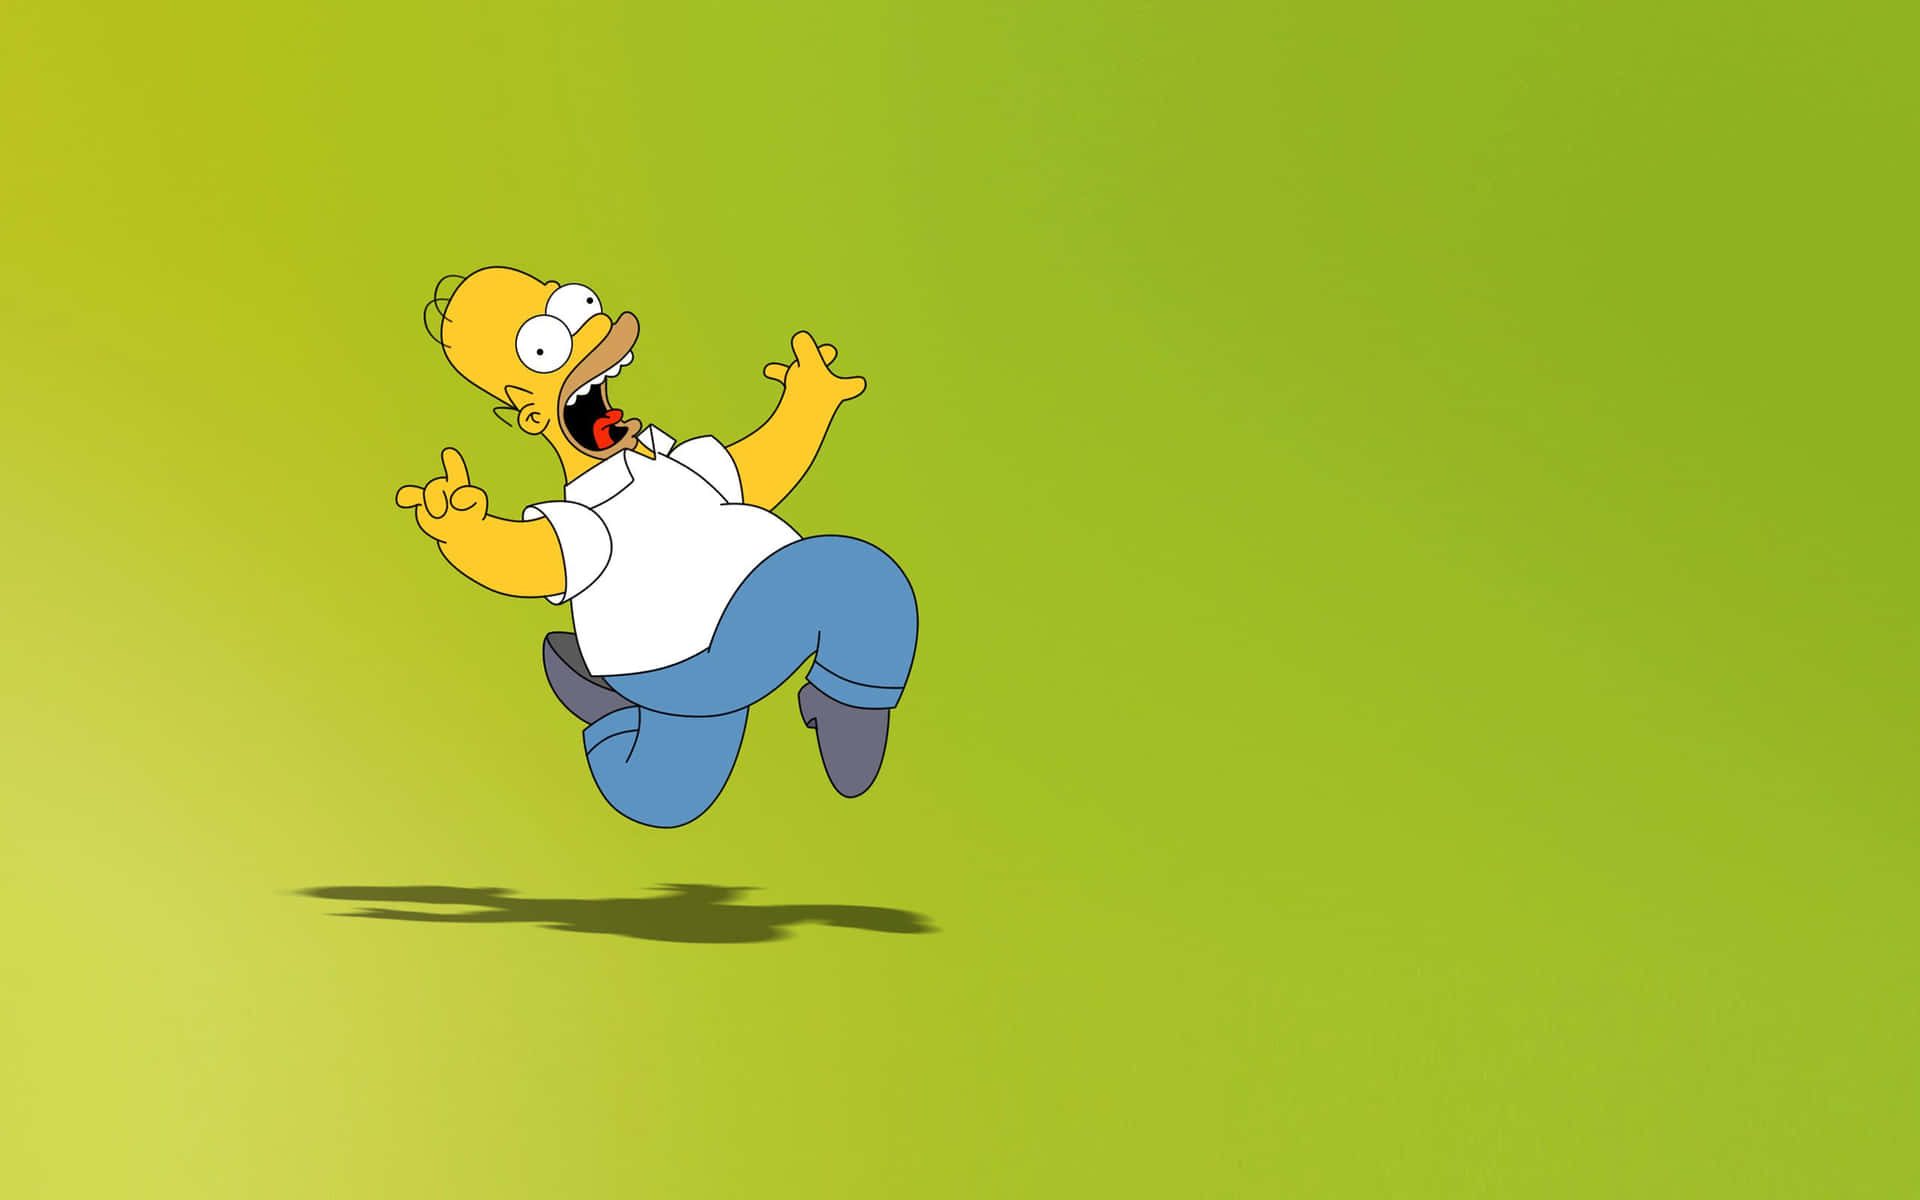 Éhora De Celebrar Sua Paixão Por Os Simpsons No Seu Pc. Papel de Parede